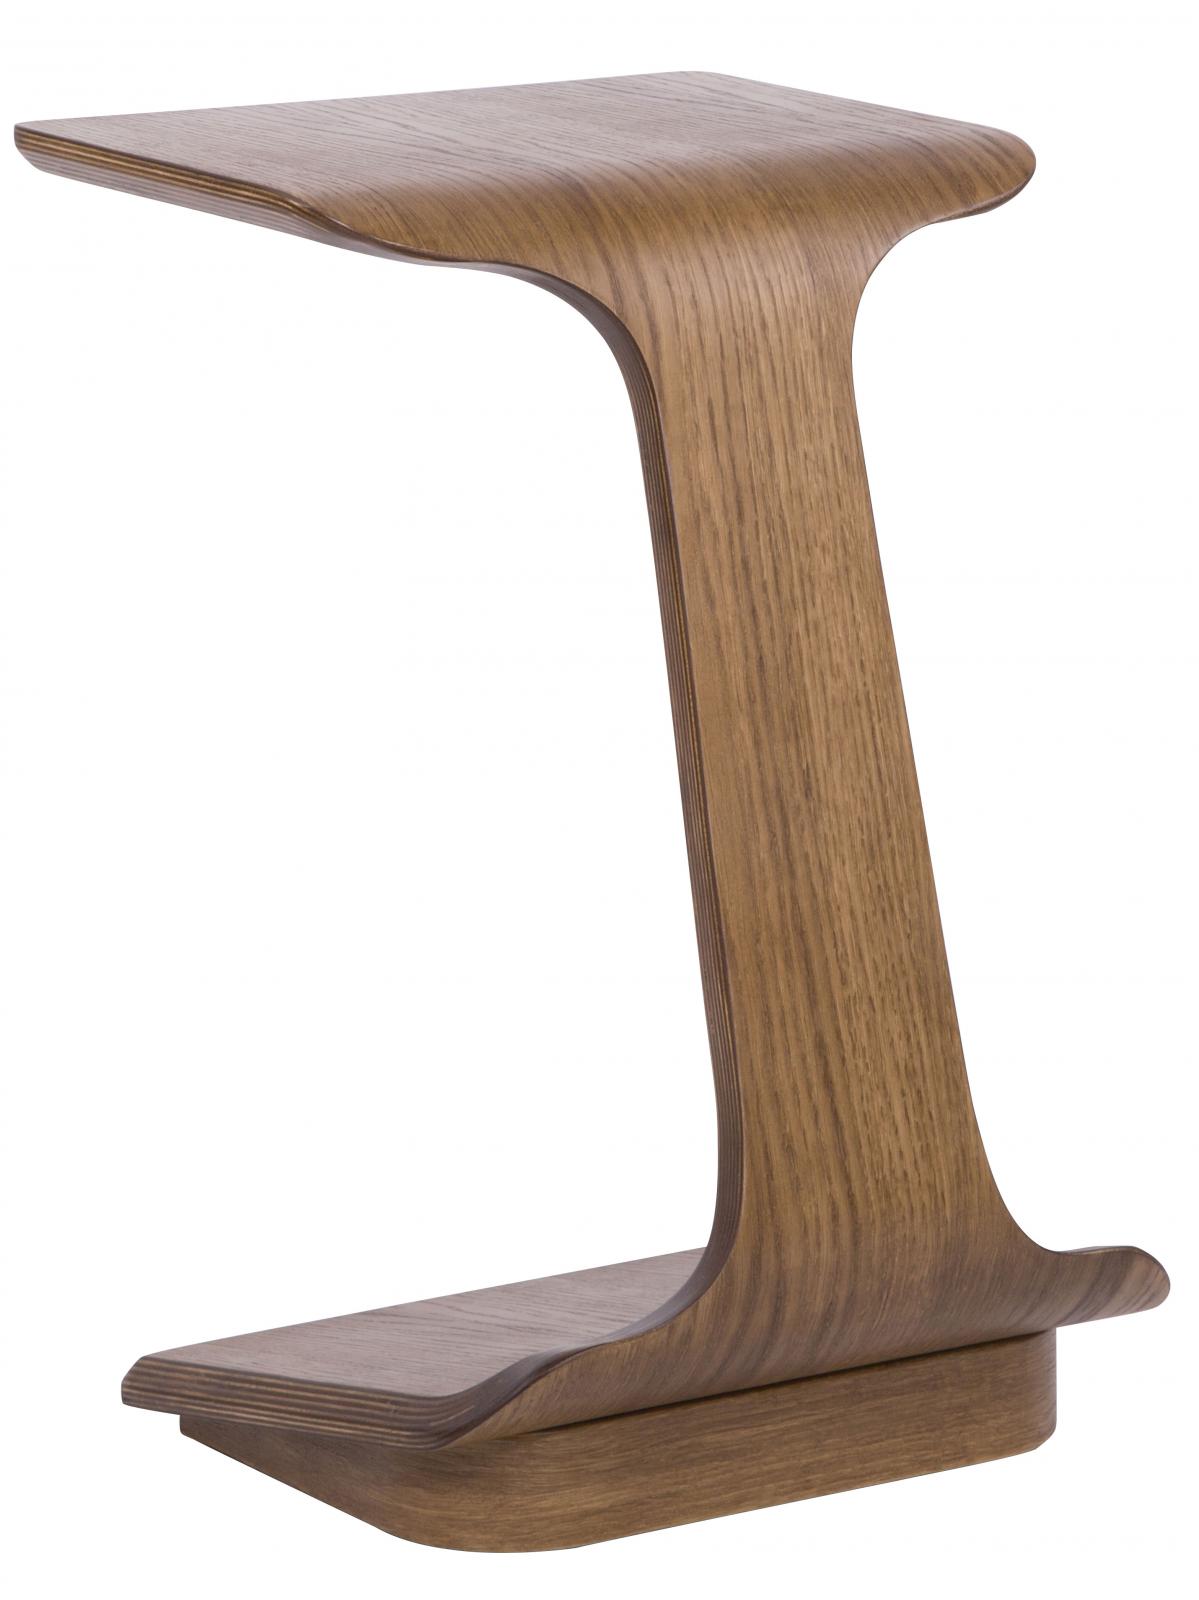 Купить стол Мебелик Стол журнальный Мебелик приставной Неро 2, дуб натуральный дуб натуральный дешево на официальном сайте